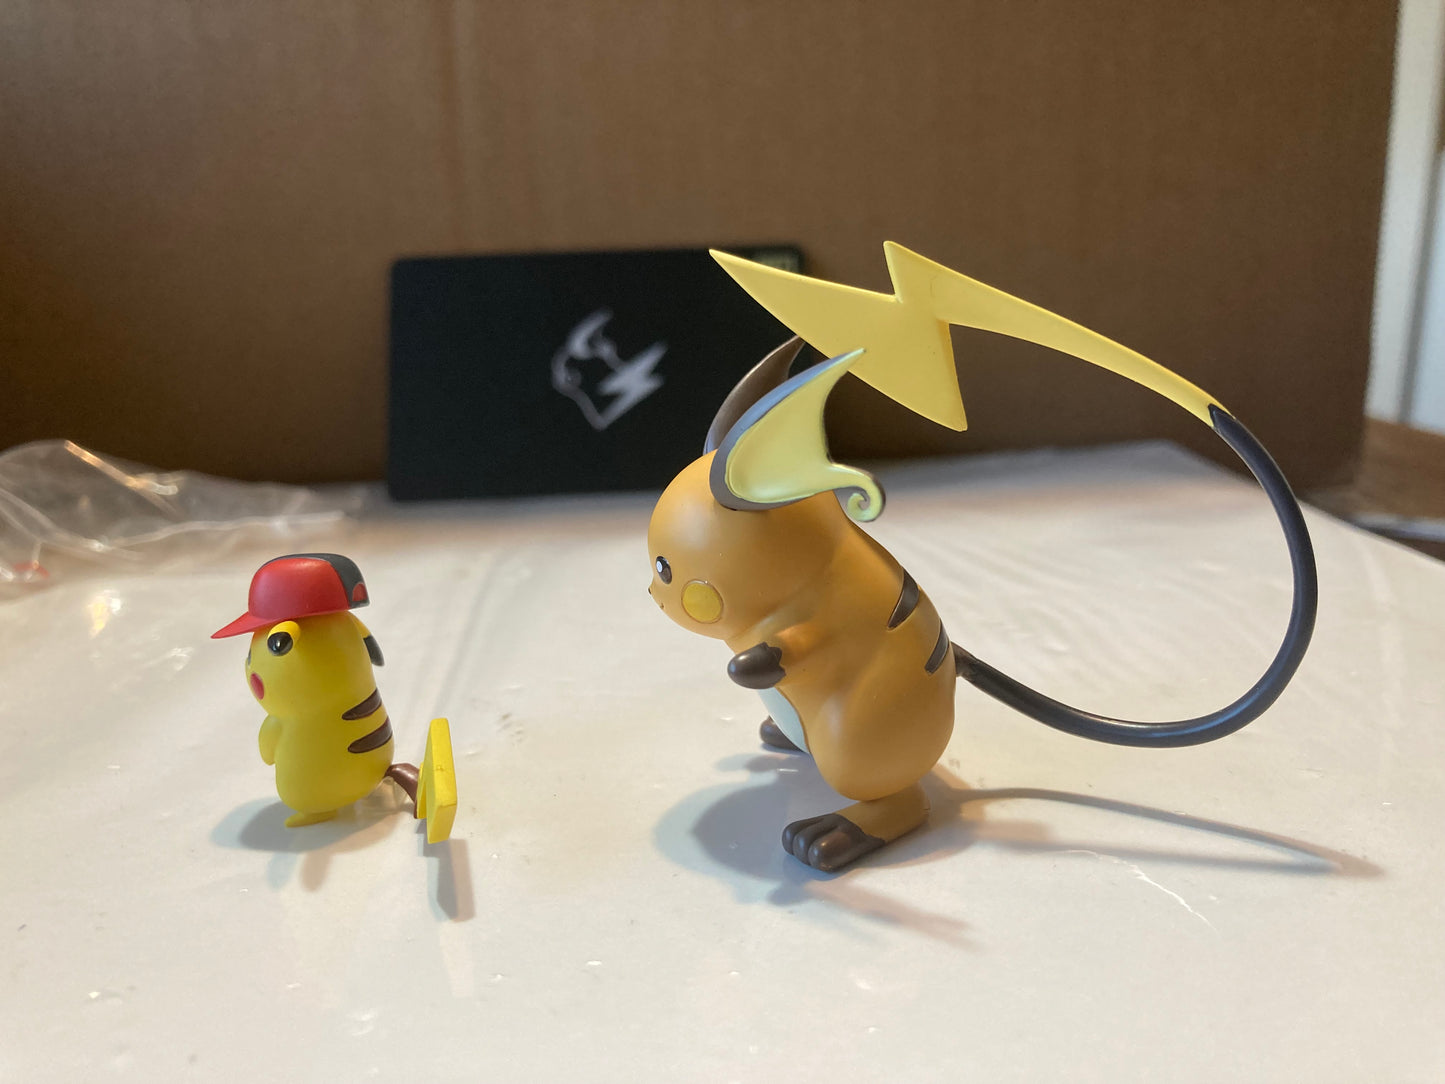 〖In Stock〗Pokemon Scale World Raichu 1:20 - VS Studio